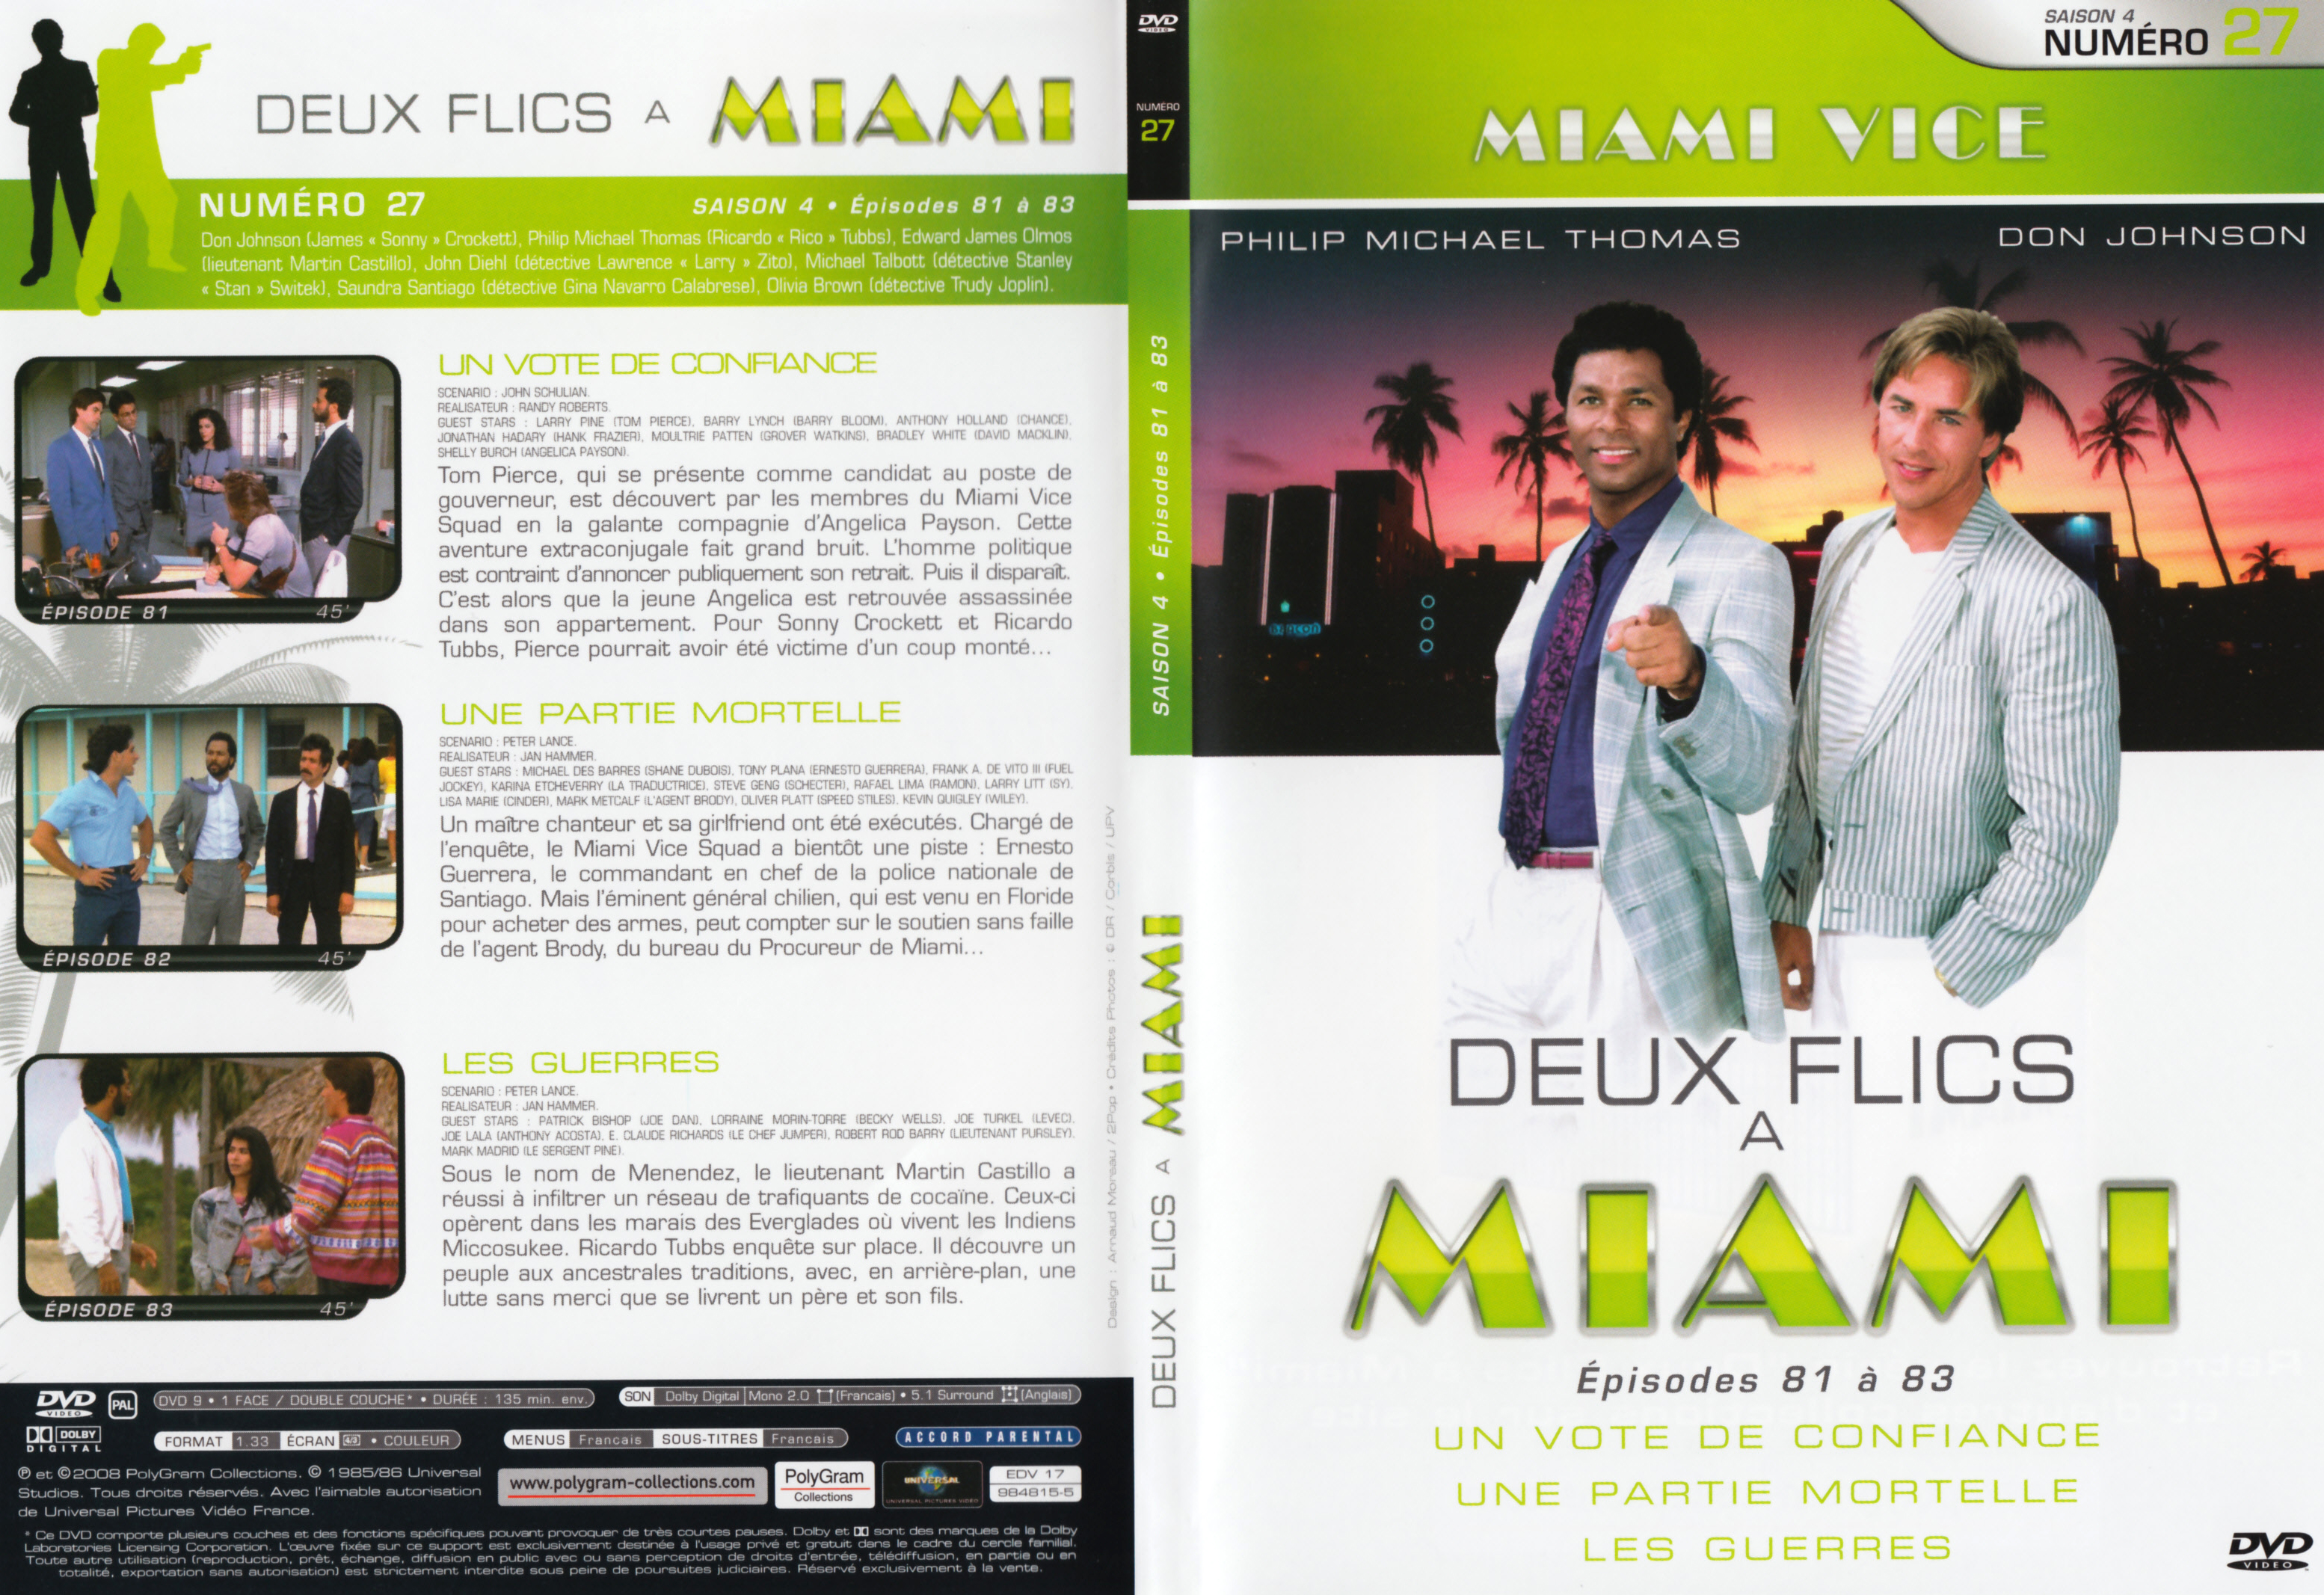 Jaquette DVD Deux flics  Miami Saison 4 vol 27